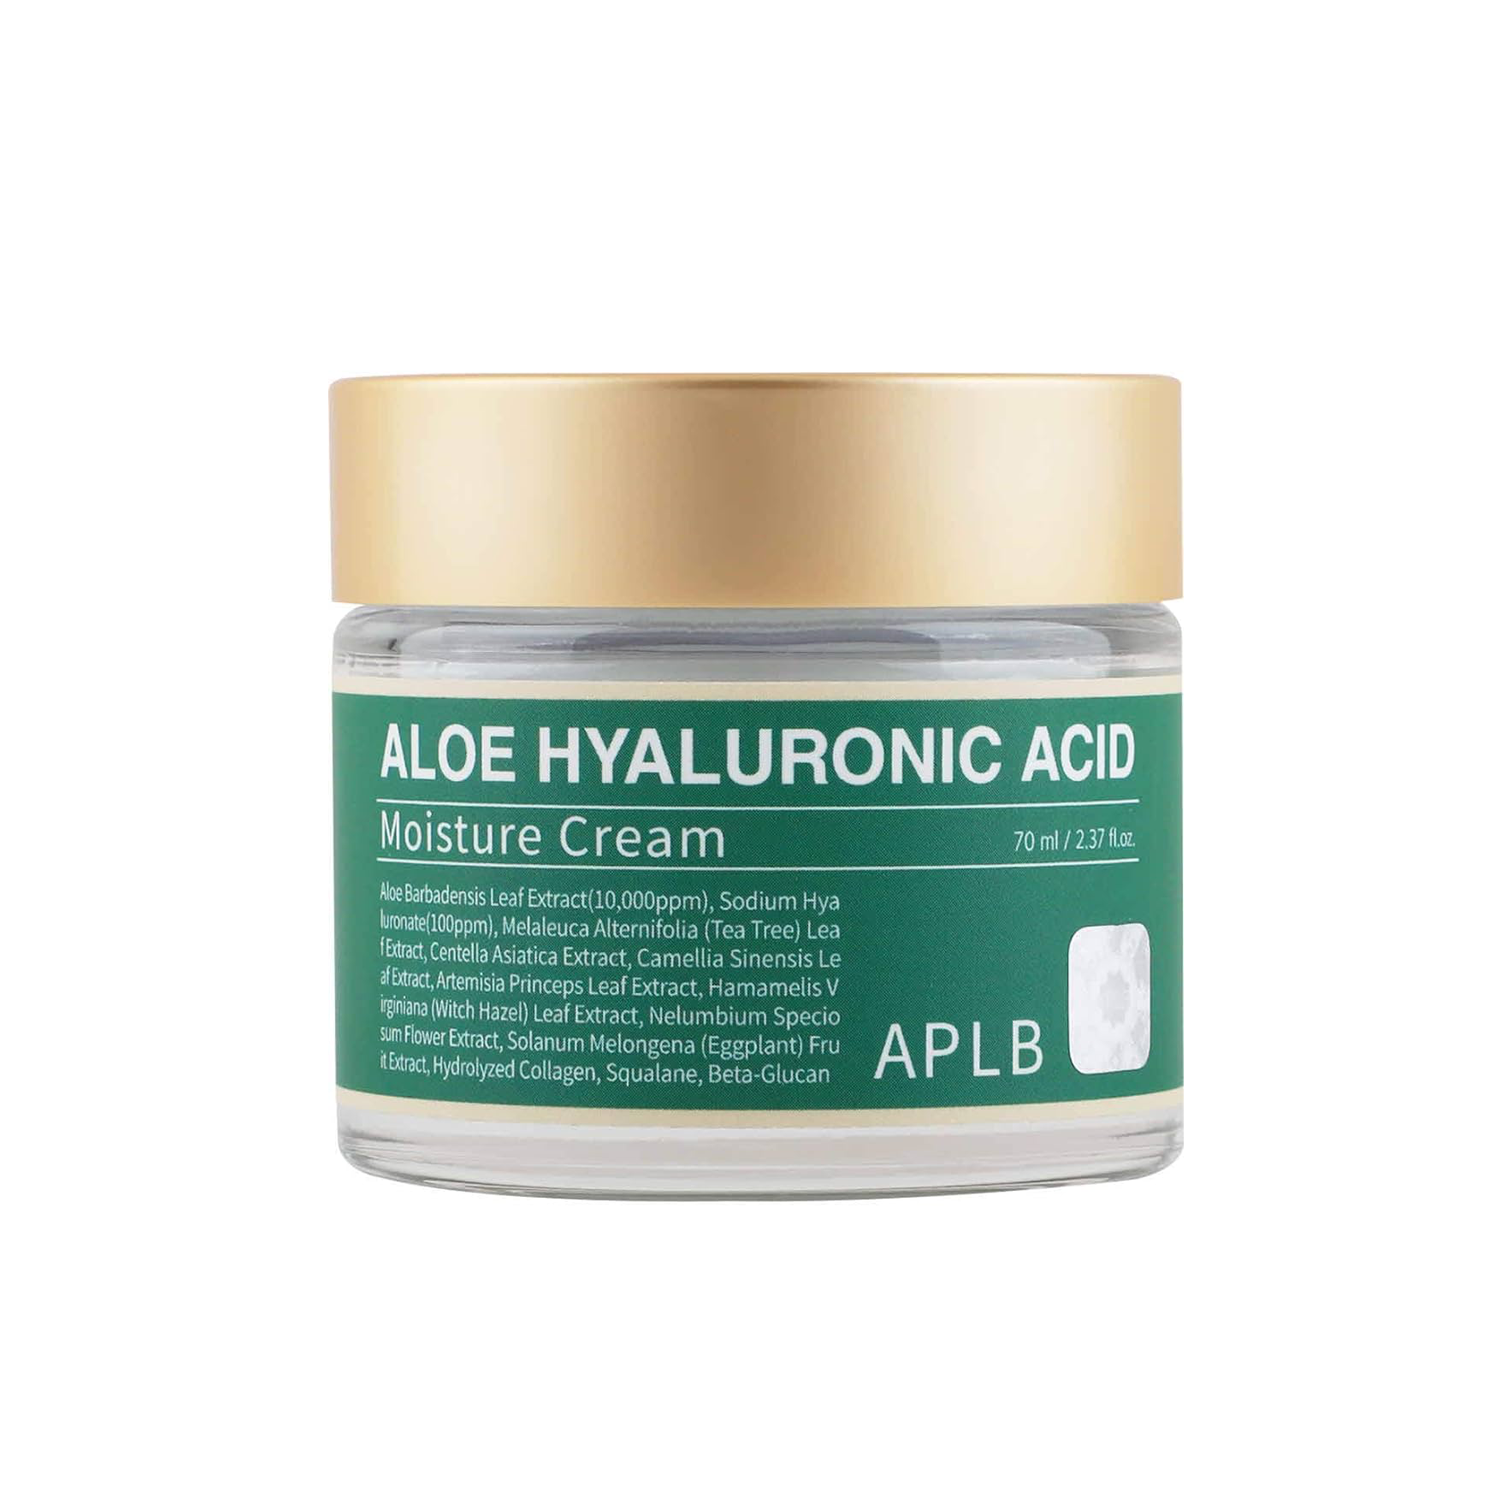 APLB Aloe Hyaluronic Acid Moisture Cream 70ml - DODOSKIN